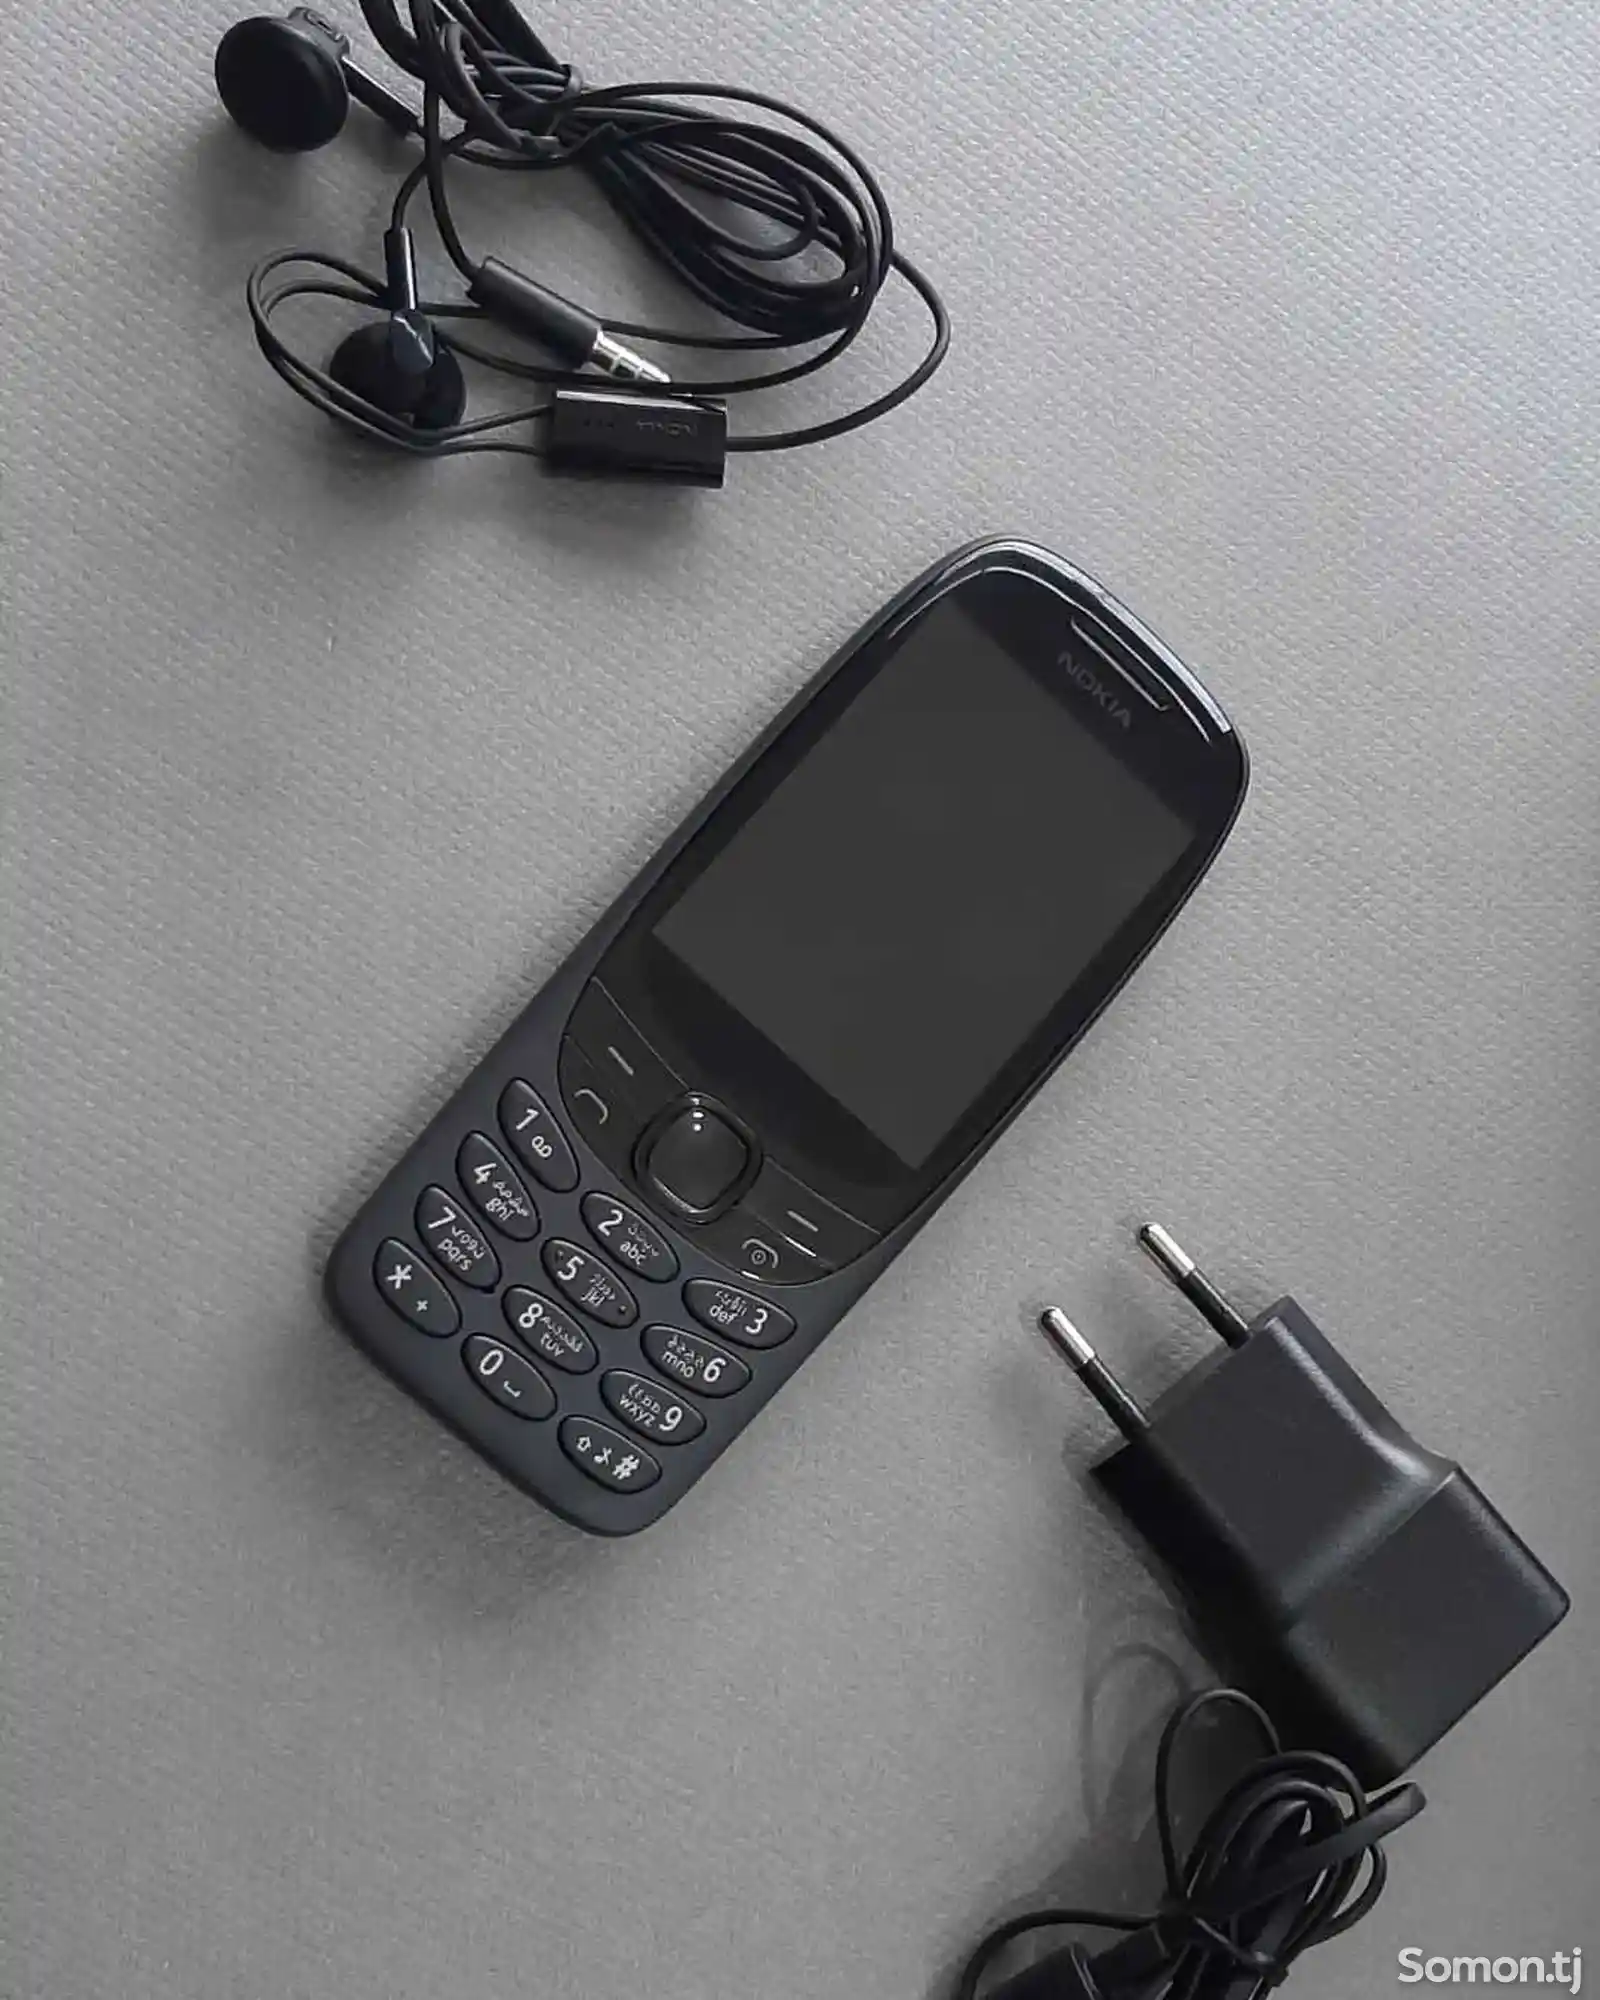 Nokia 6310-2